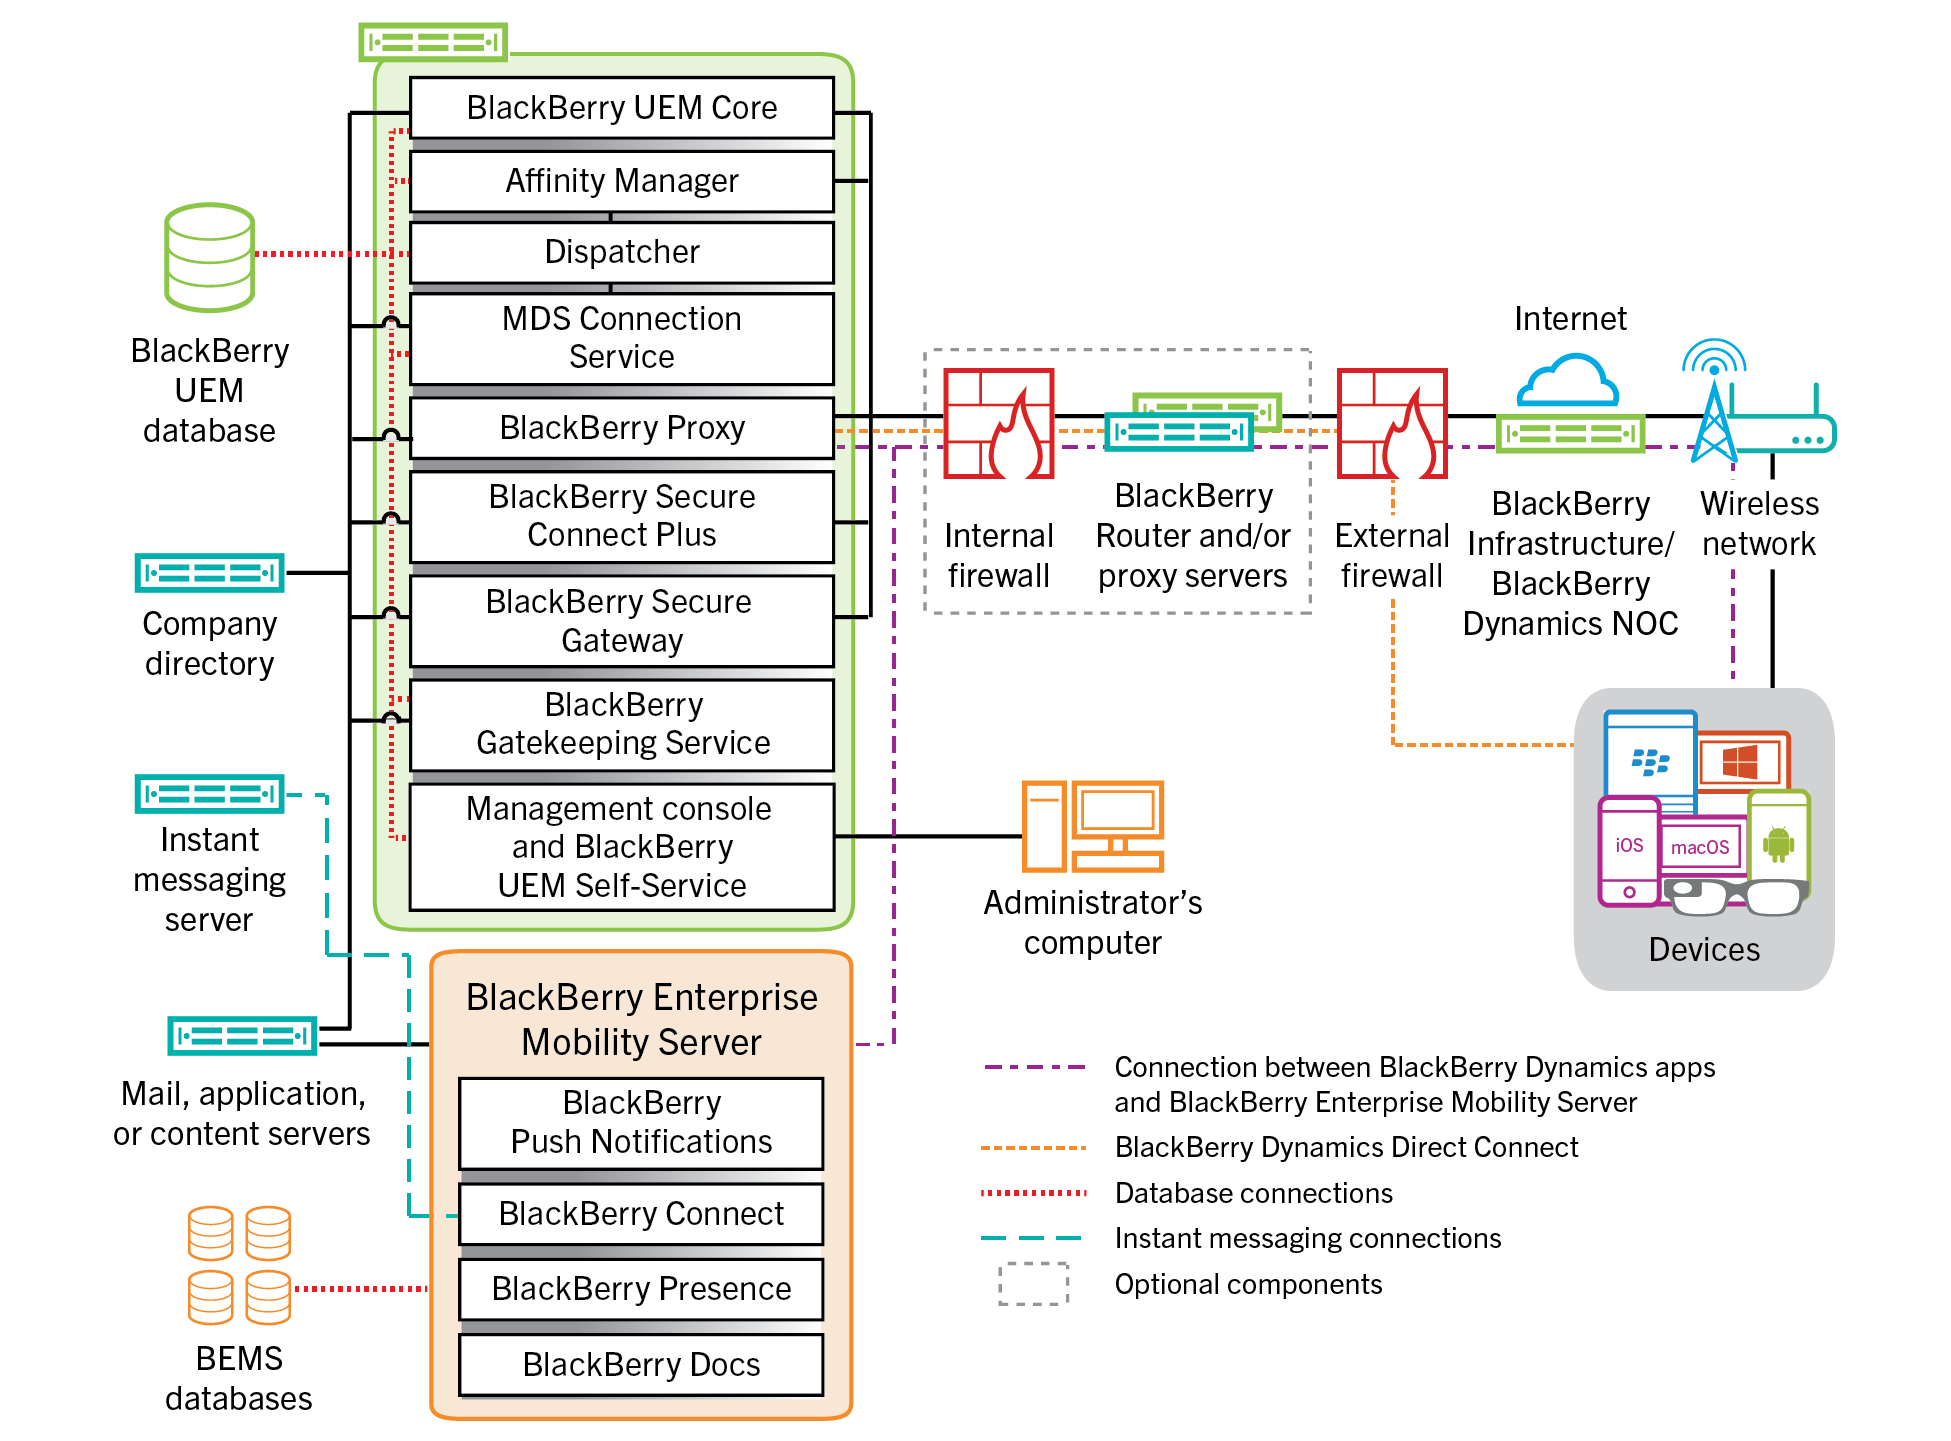 Architecture diagram showing BlackBerry UEM components